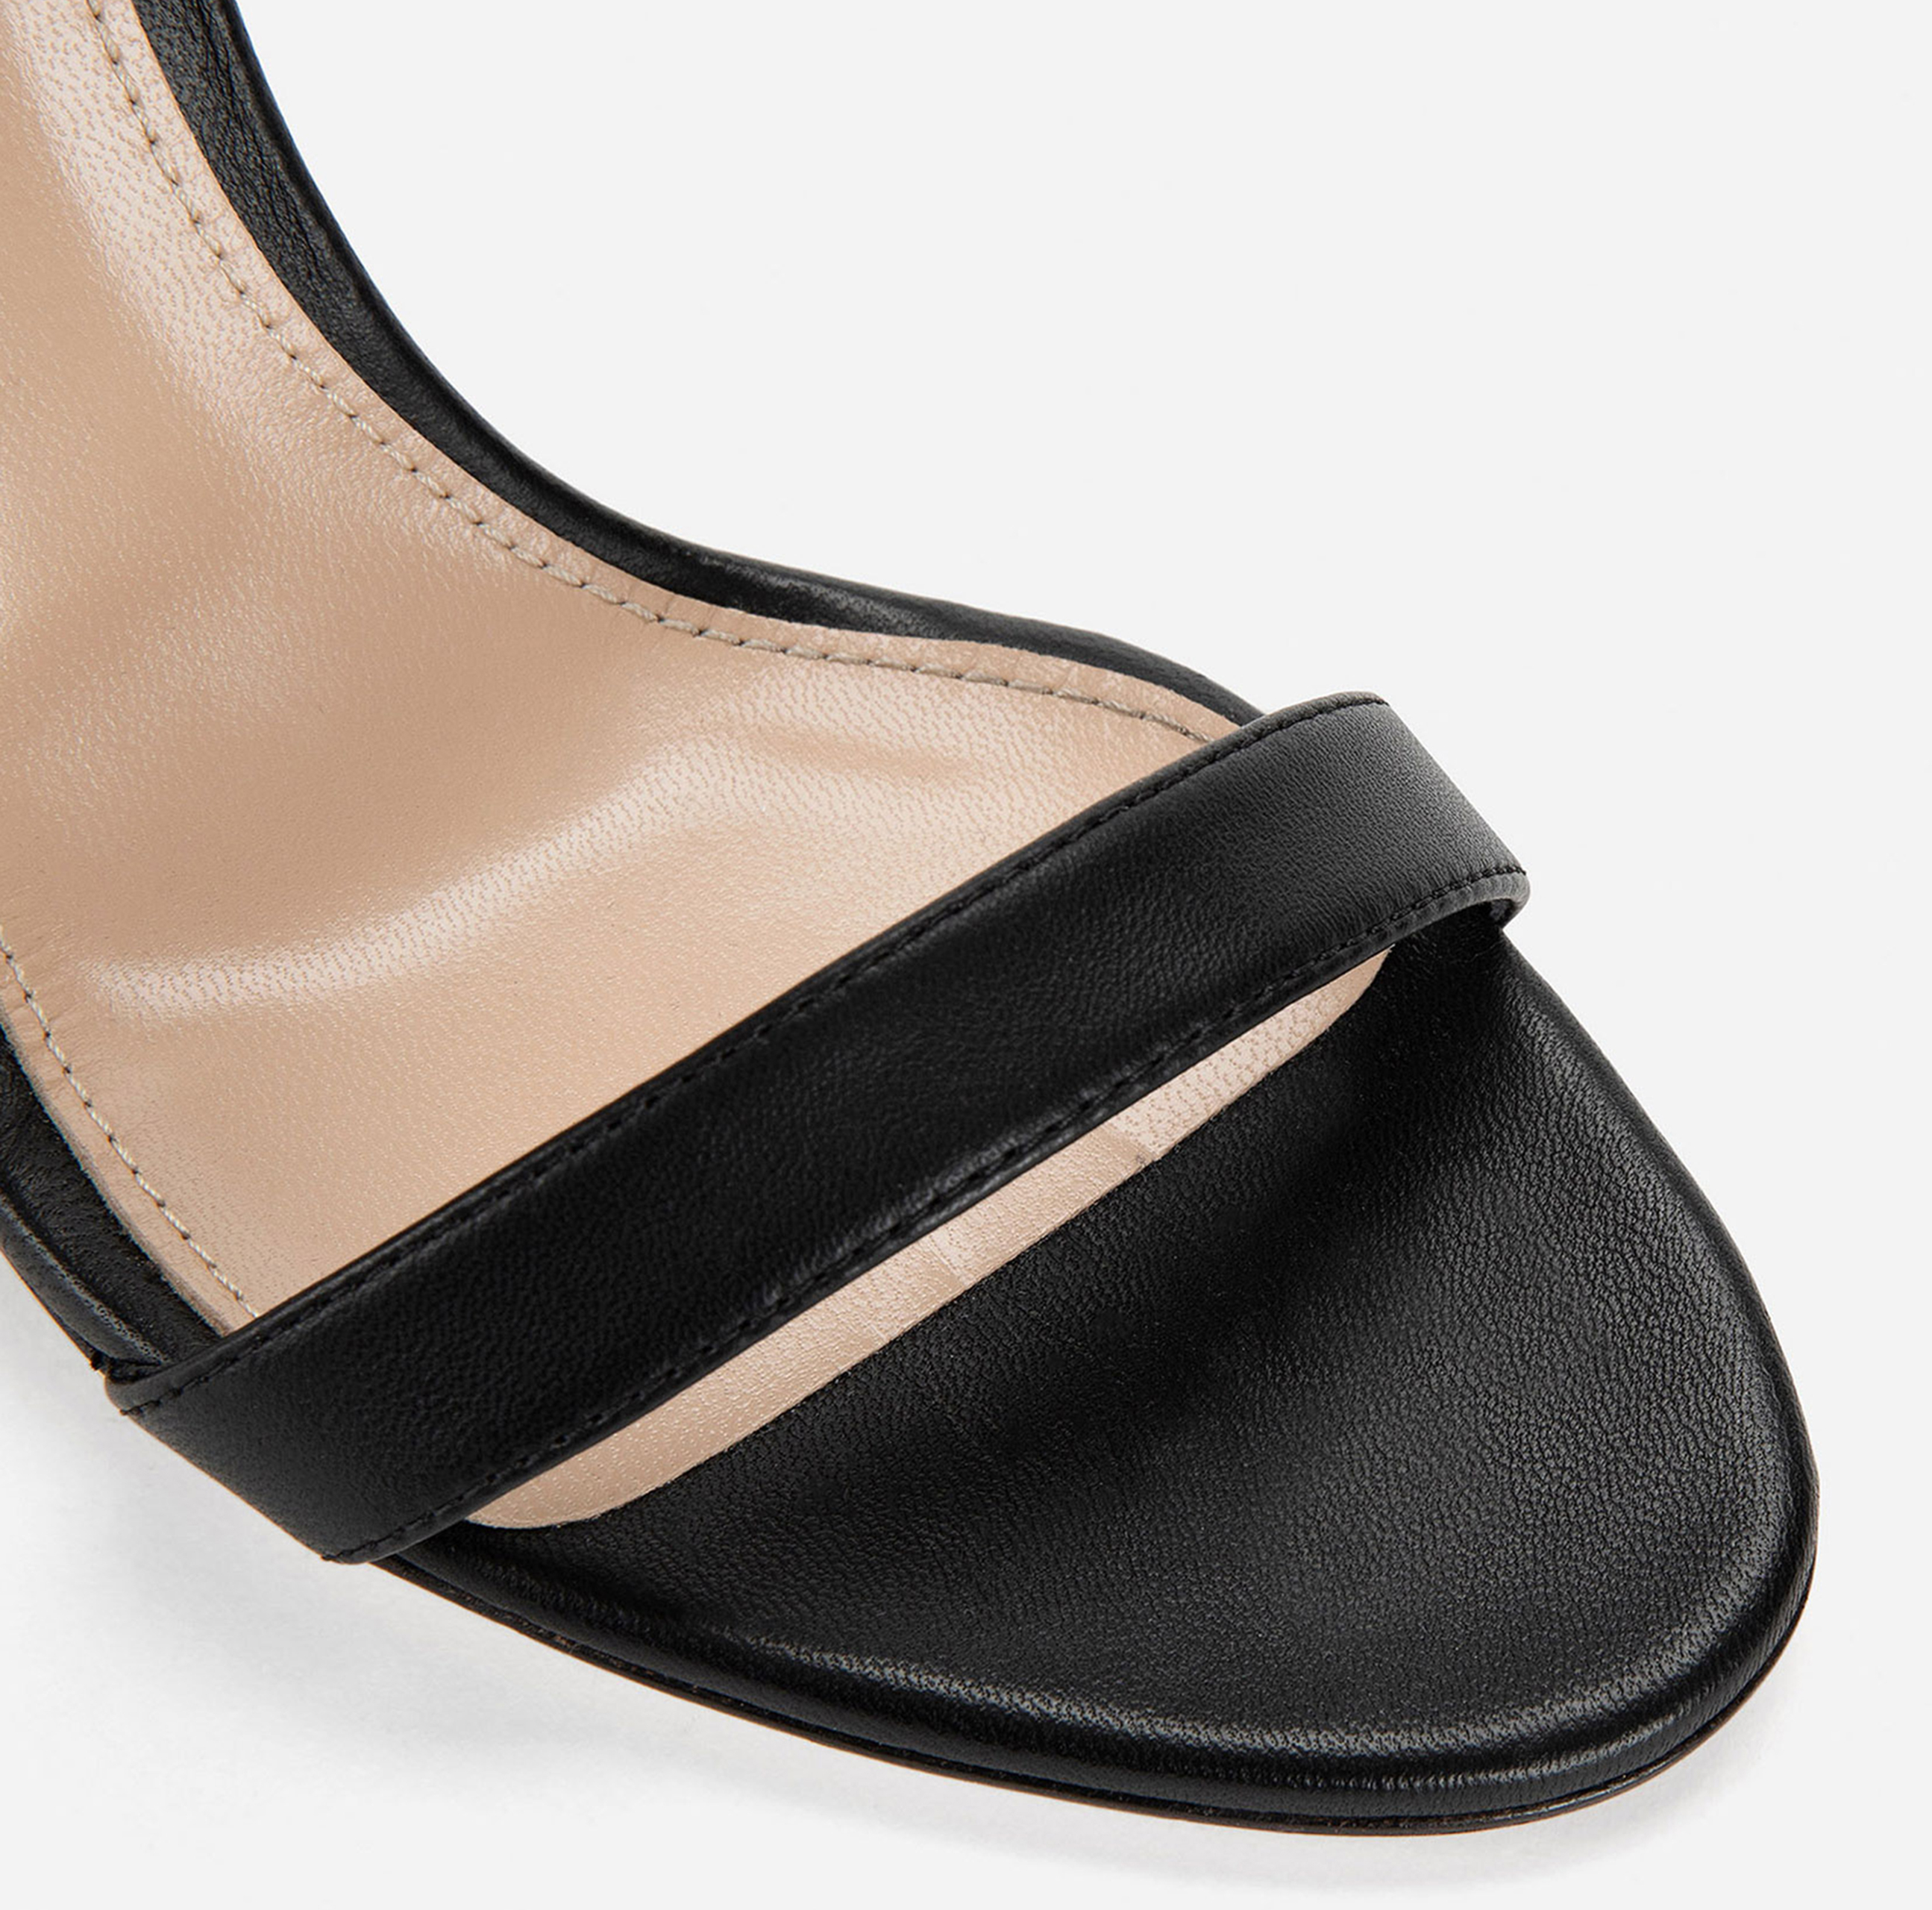 Sandale mit schmalem Absatz, Absatzhöhe 95 mm - Elisabetta Franchi